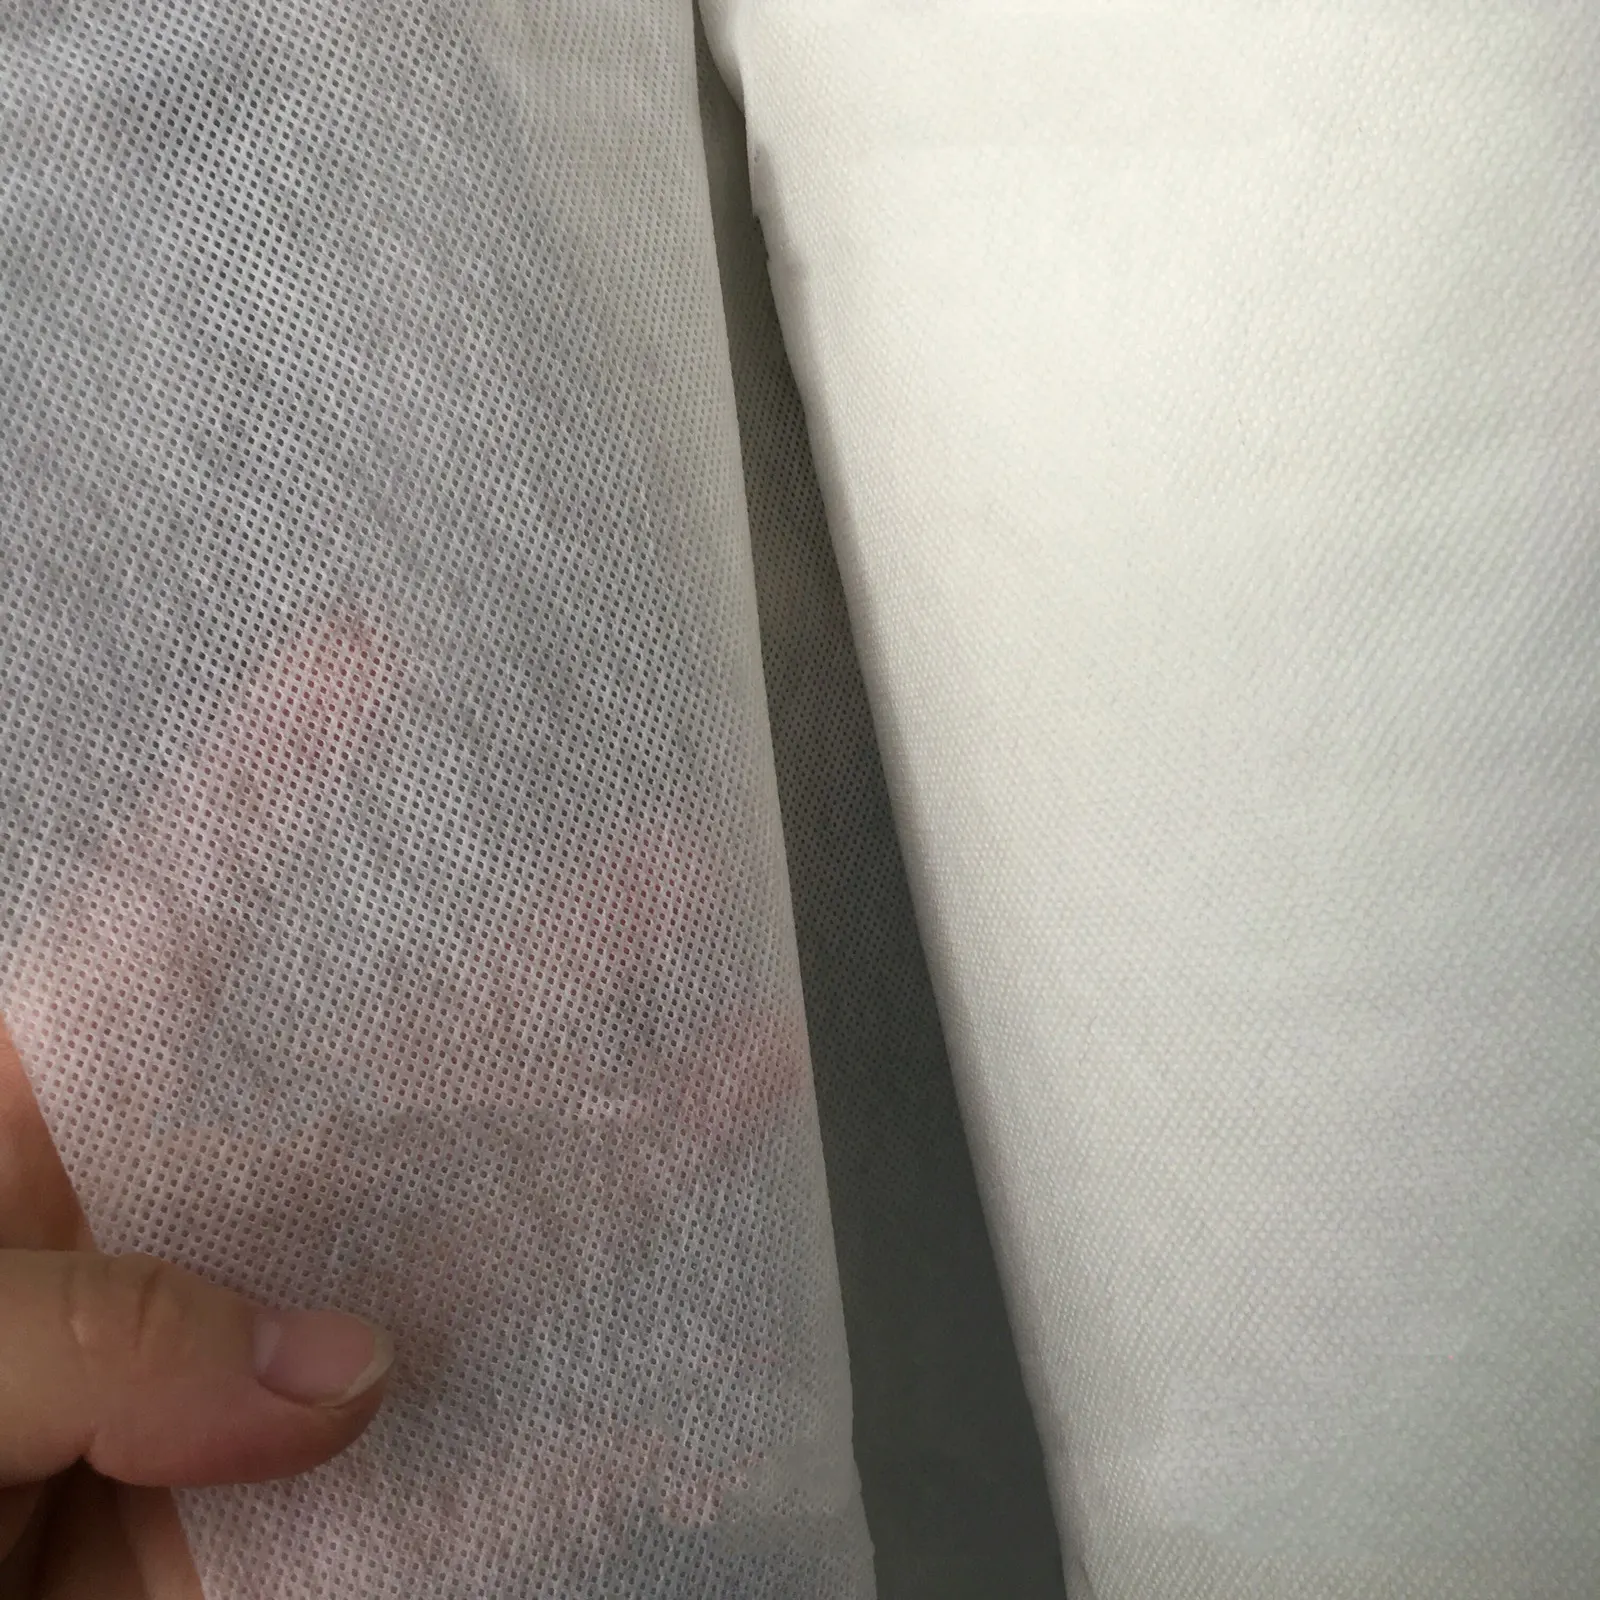 Kimyasal bağ dokunmamış kumaş çantalar malzeme vuruş yumuşak polyester olmayan dokuma kumaş çanta buckram kumaş için iç astar olarak